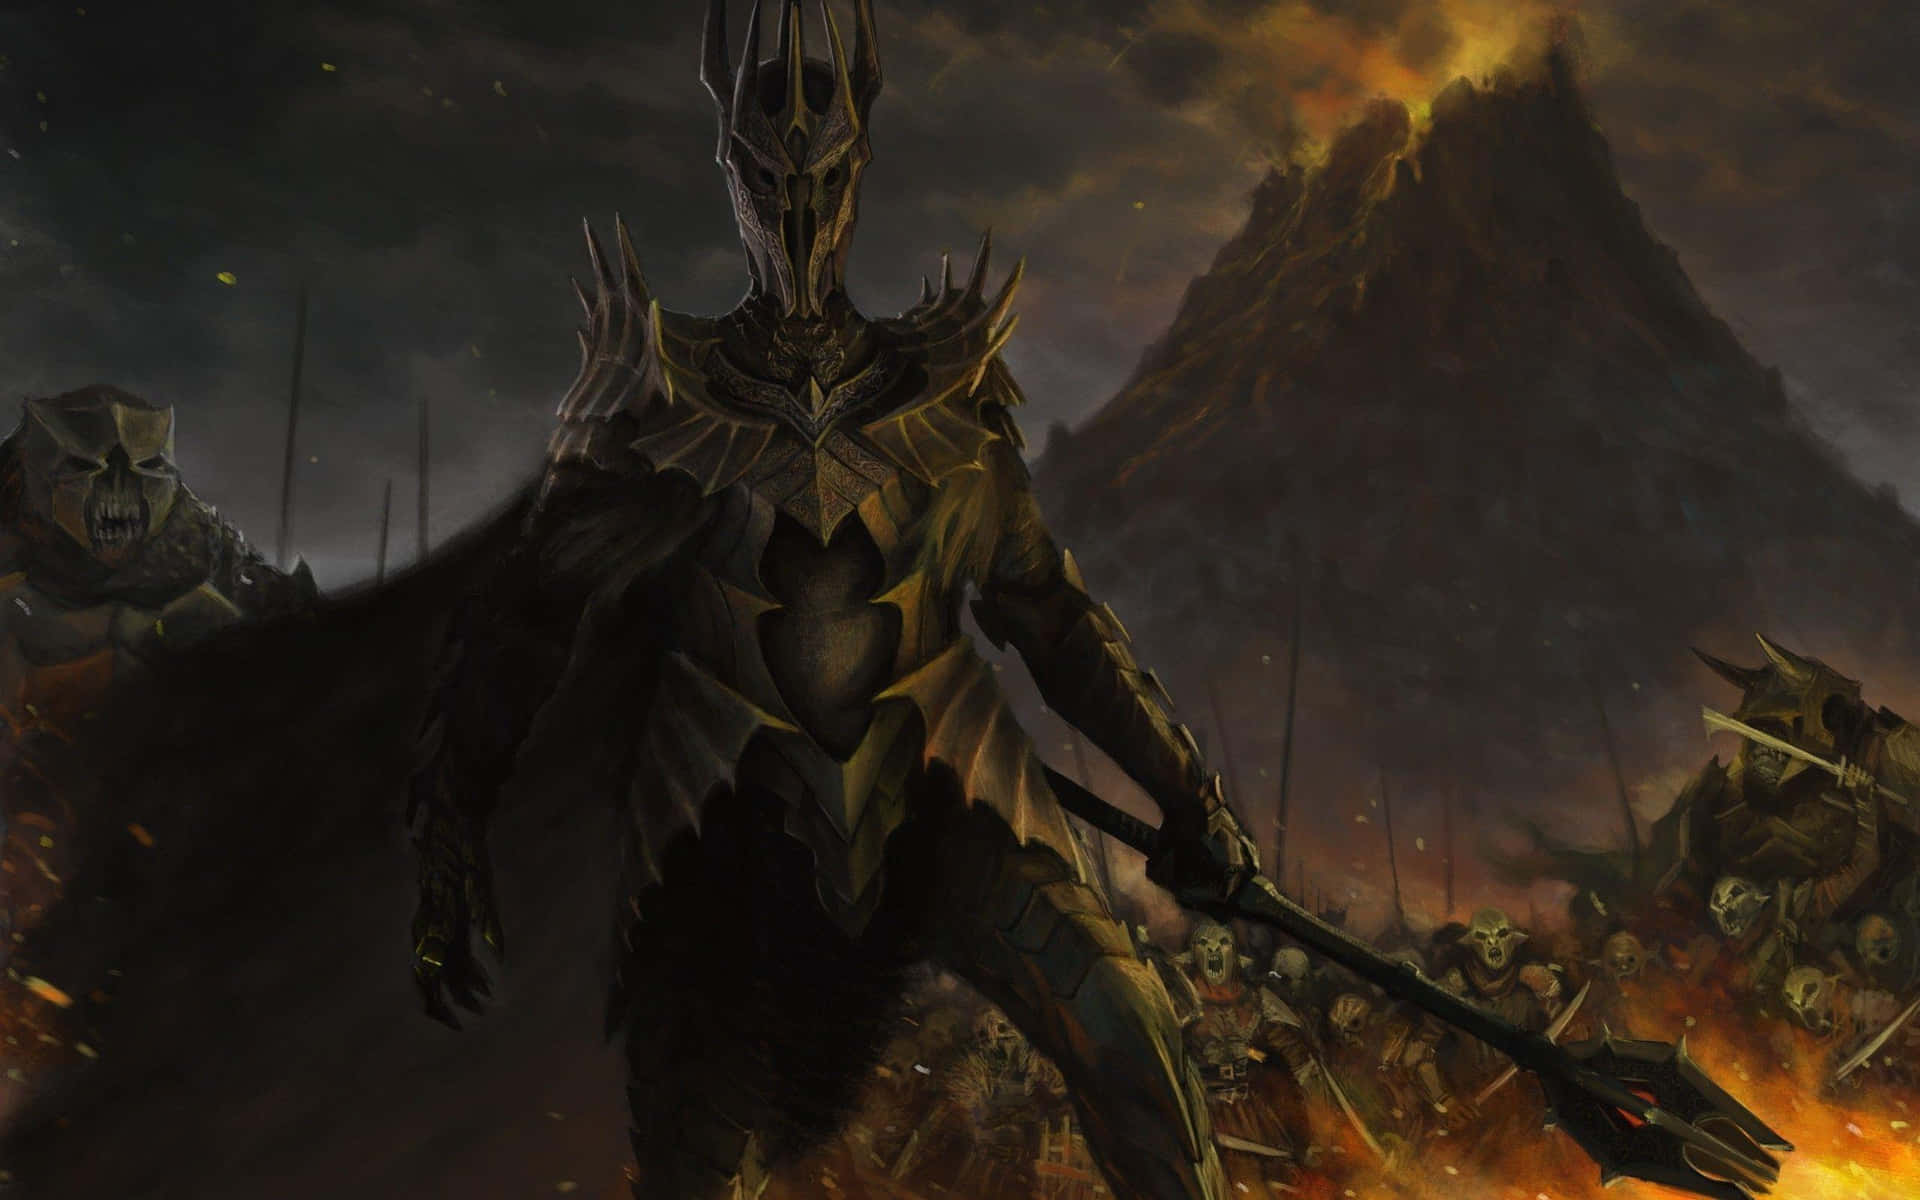 Dark Lord Sauron Mordor Armies.jpg Wallpaper